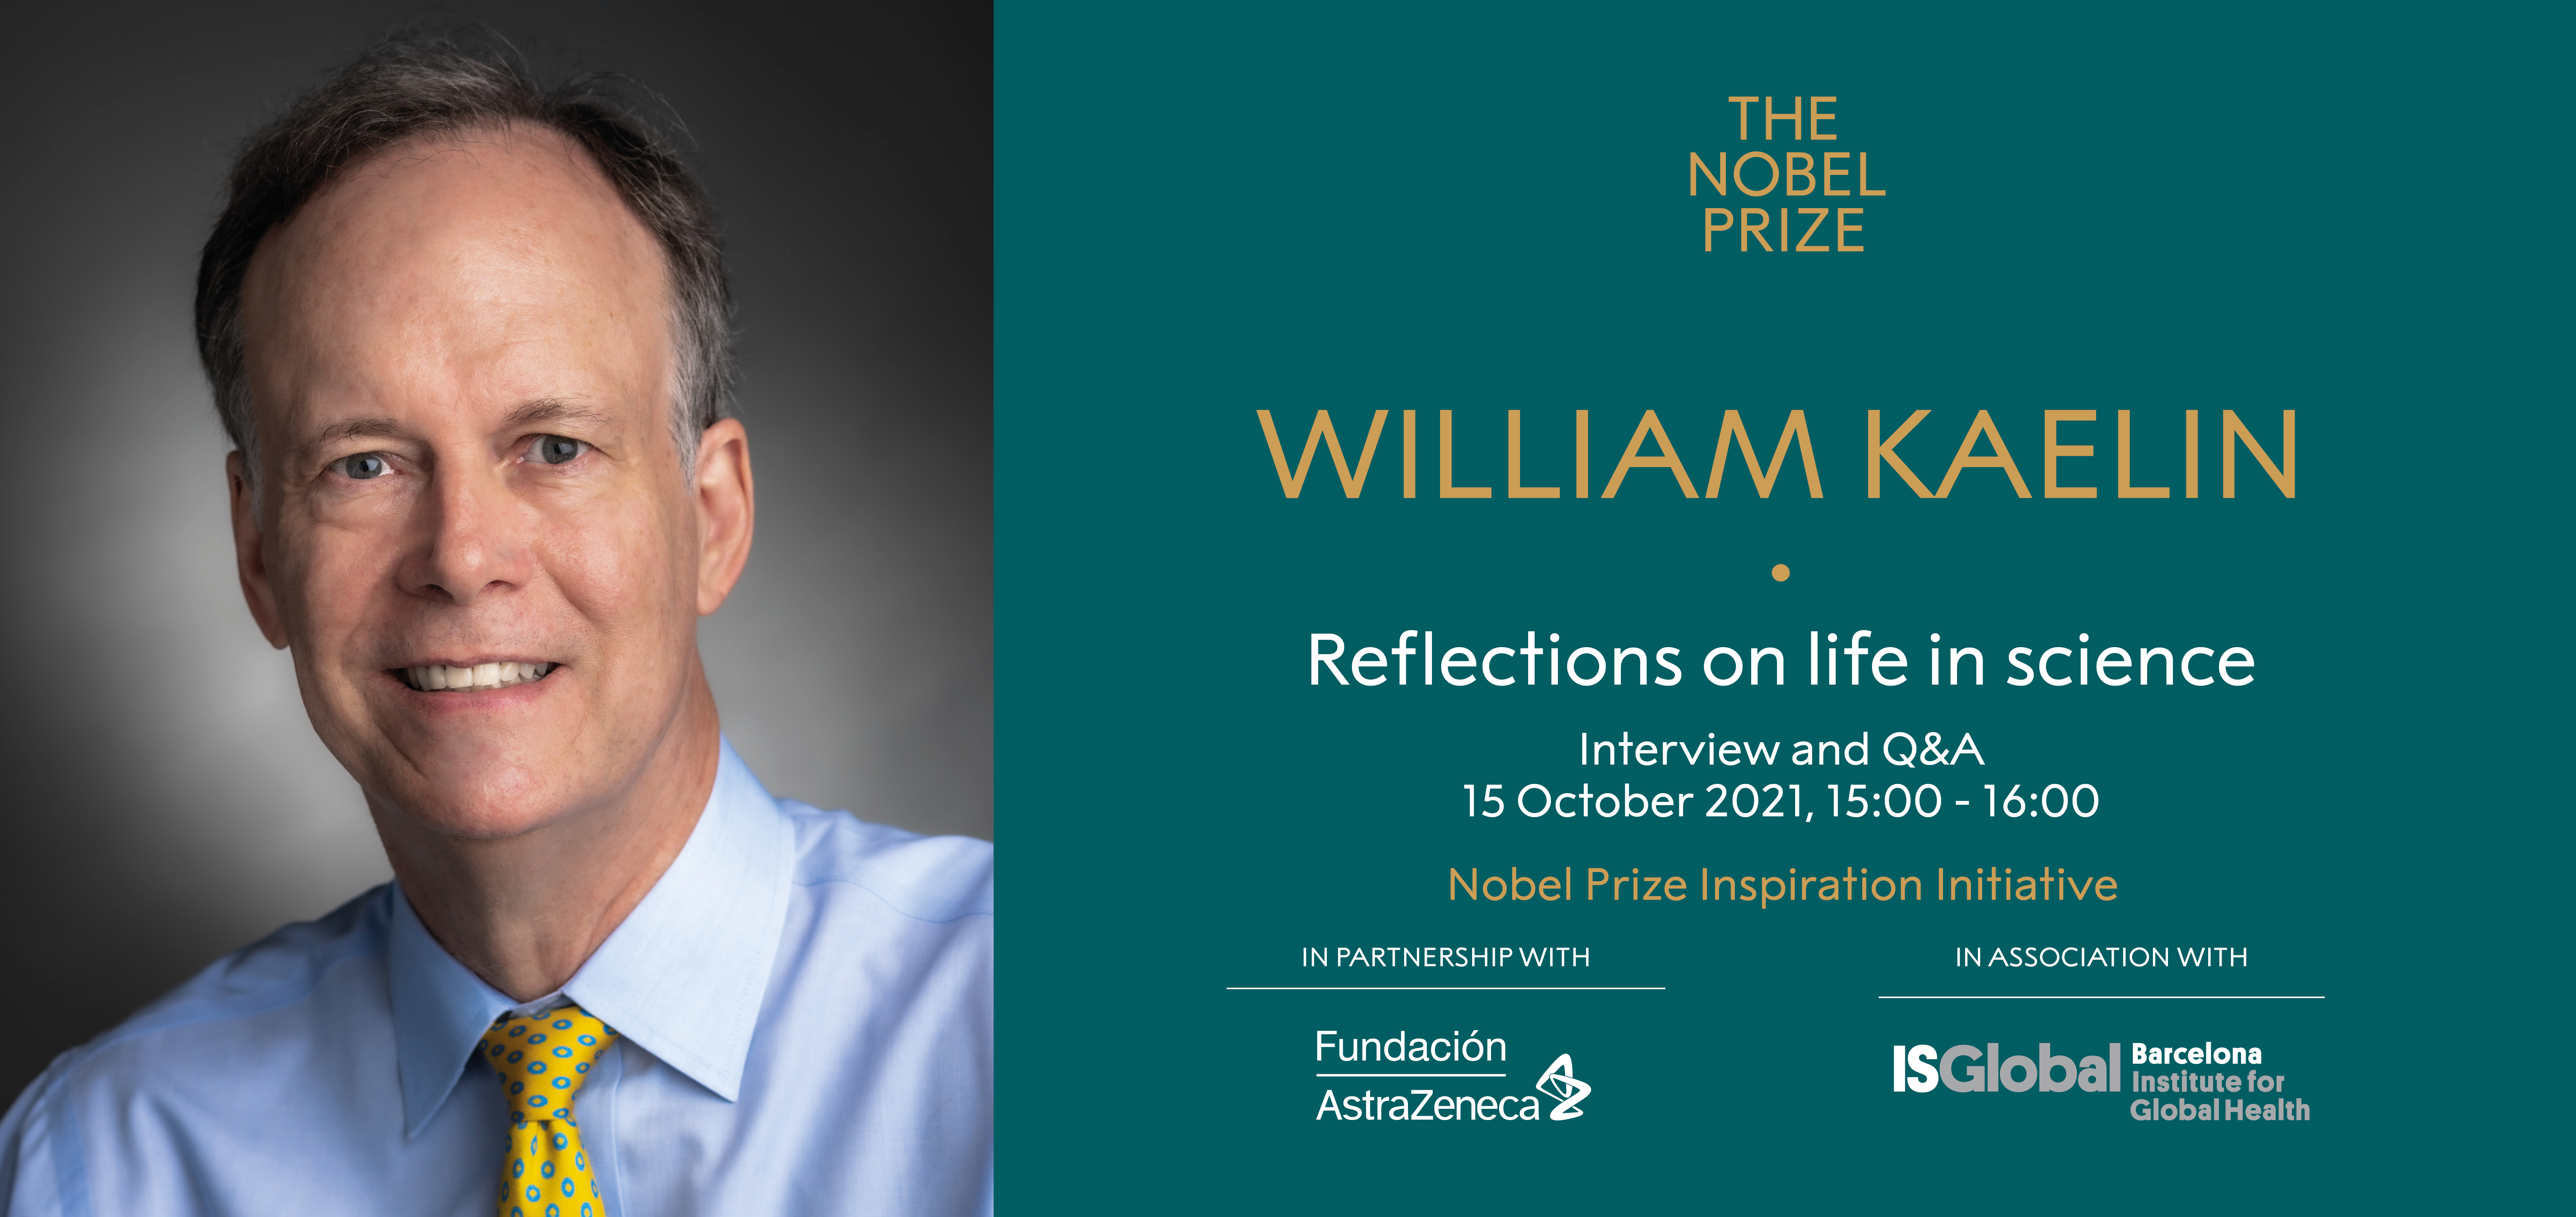 William Kaelin 2019 Nobel Prize